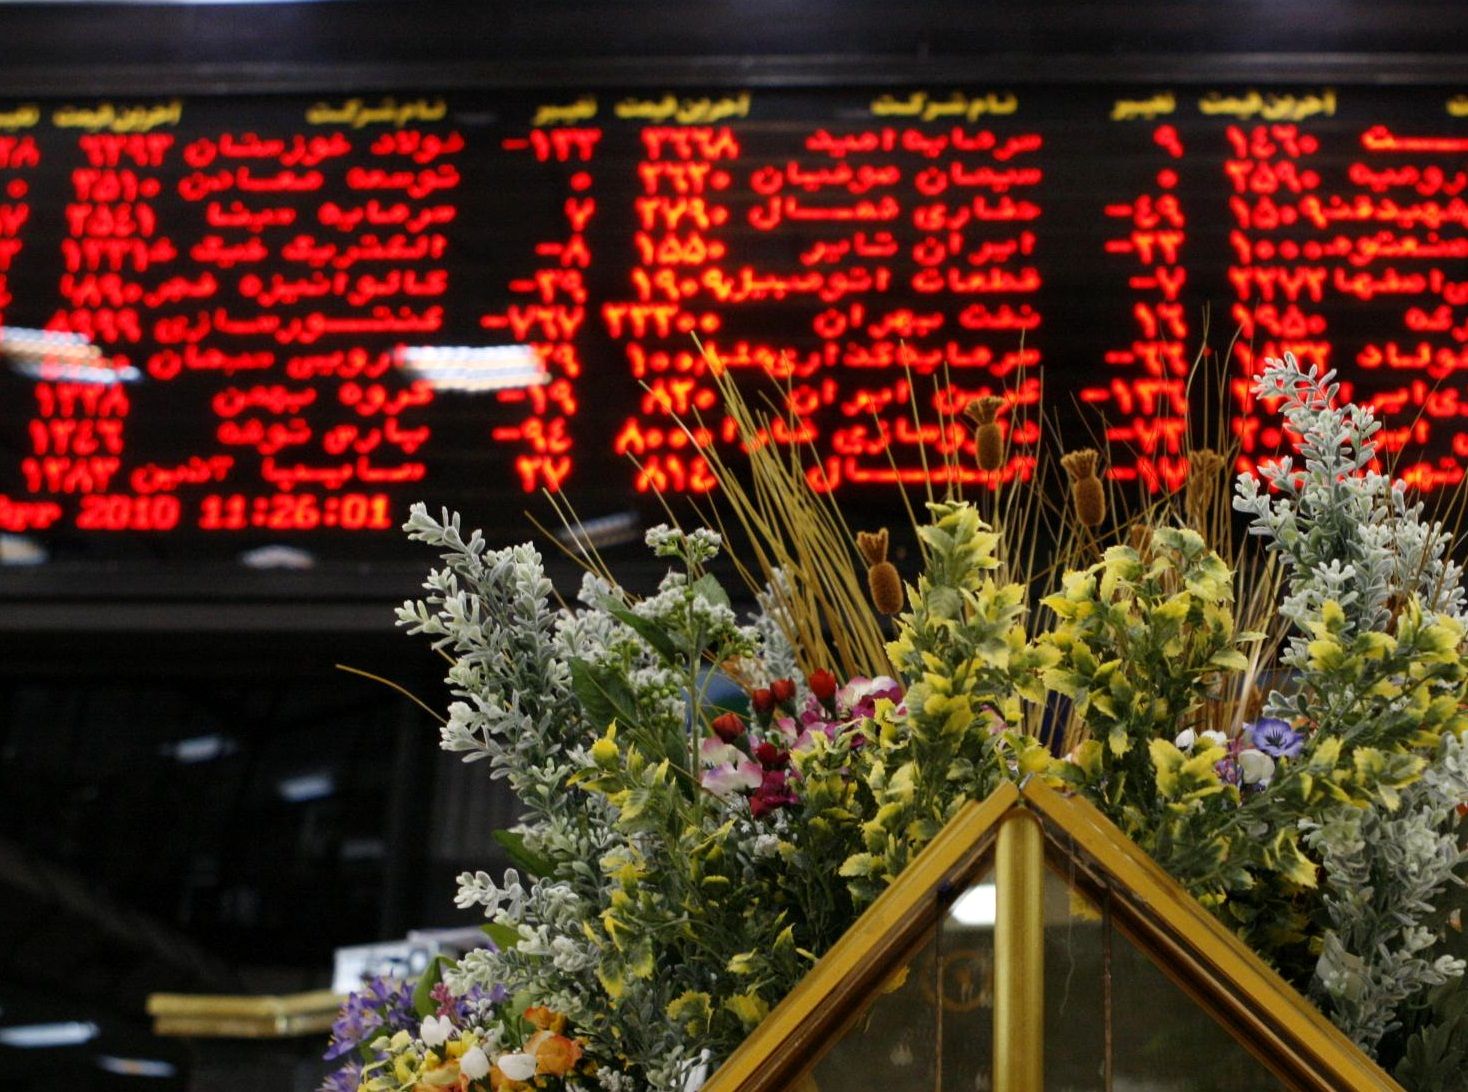 پیام تمدید مذاکرات برای سهامداران ایرانی چیست؟ خرید یا فروش؟